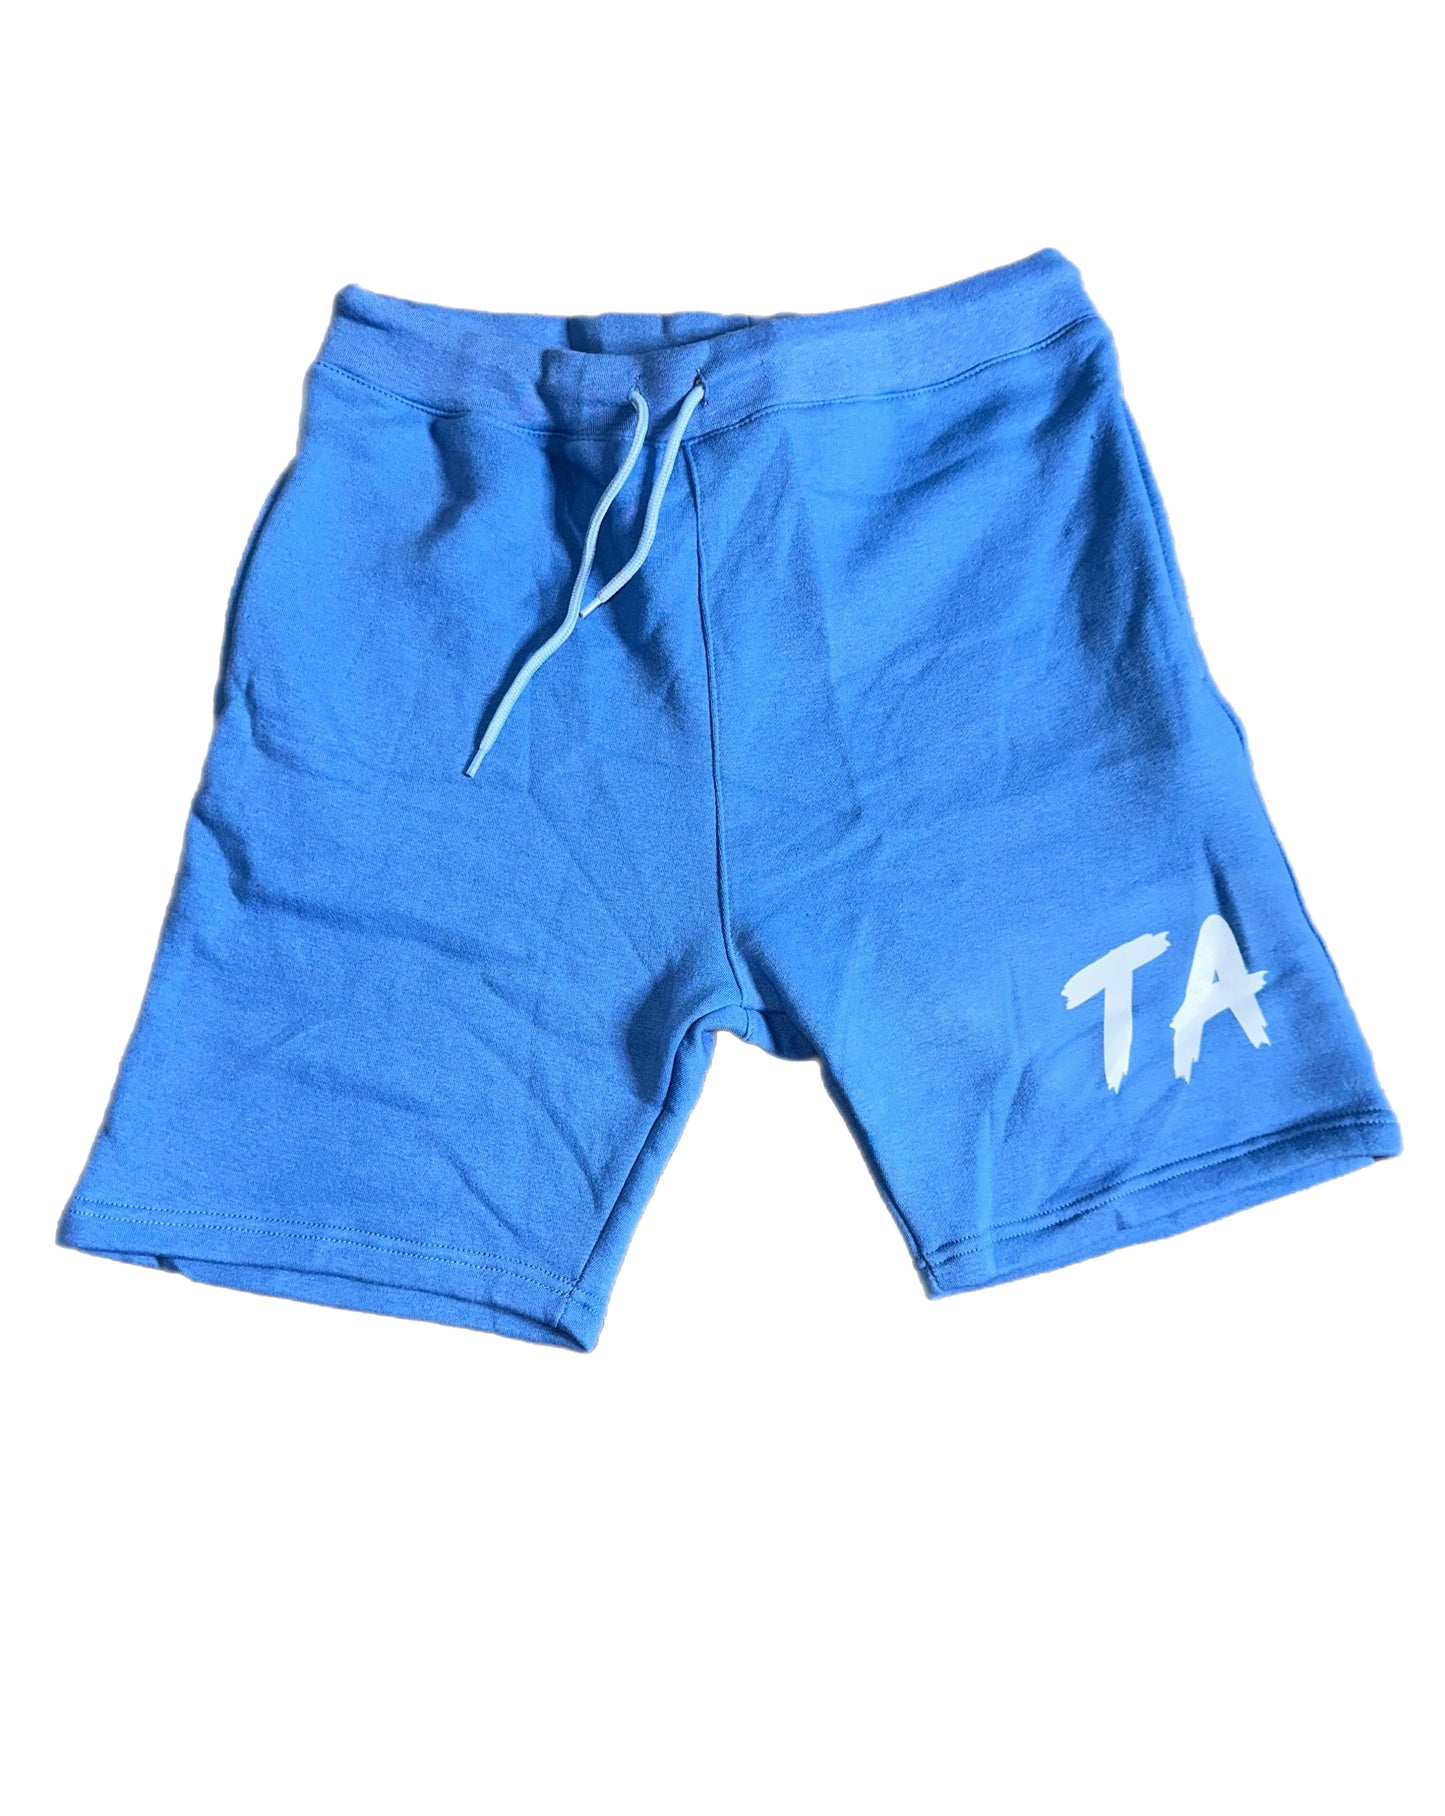 TA shorts